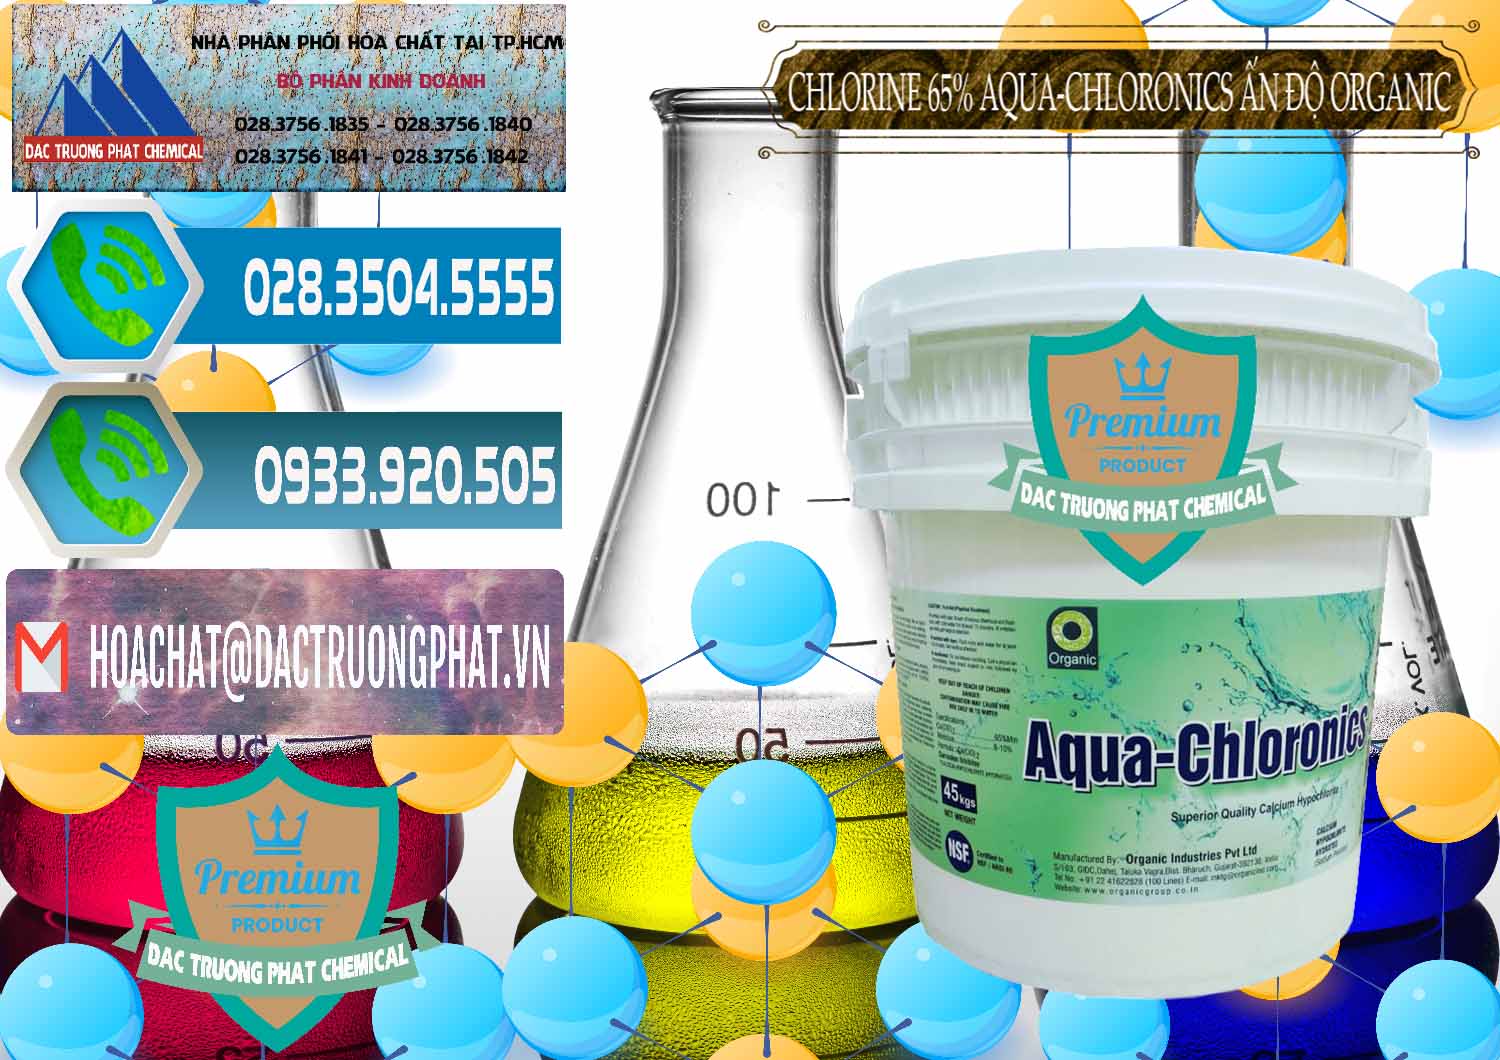 Đơn vị bán & cung cấp Chlorine – Clorin 65% Aqua-Chloronics Ấn Độ Organic India - 0210 - Công ty cung ứng & phân phối hóa chất tại TP.HCM - congtyhoachat.net